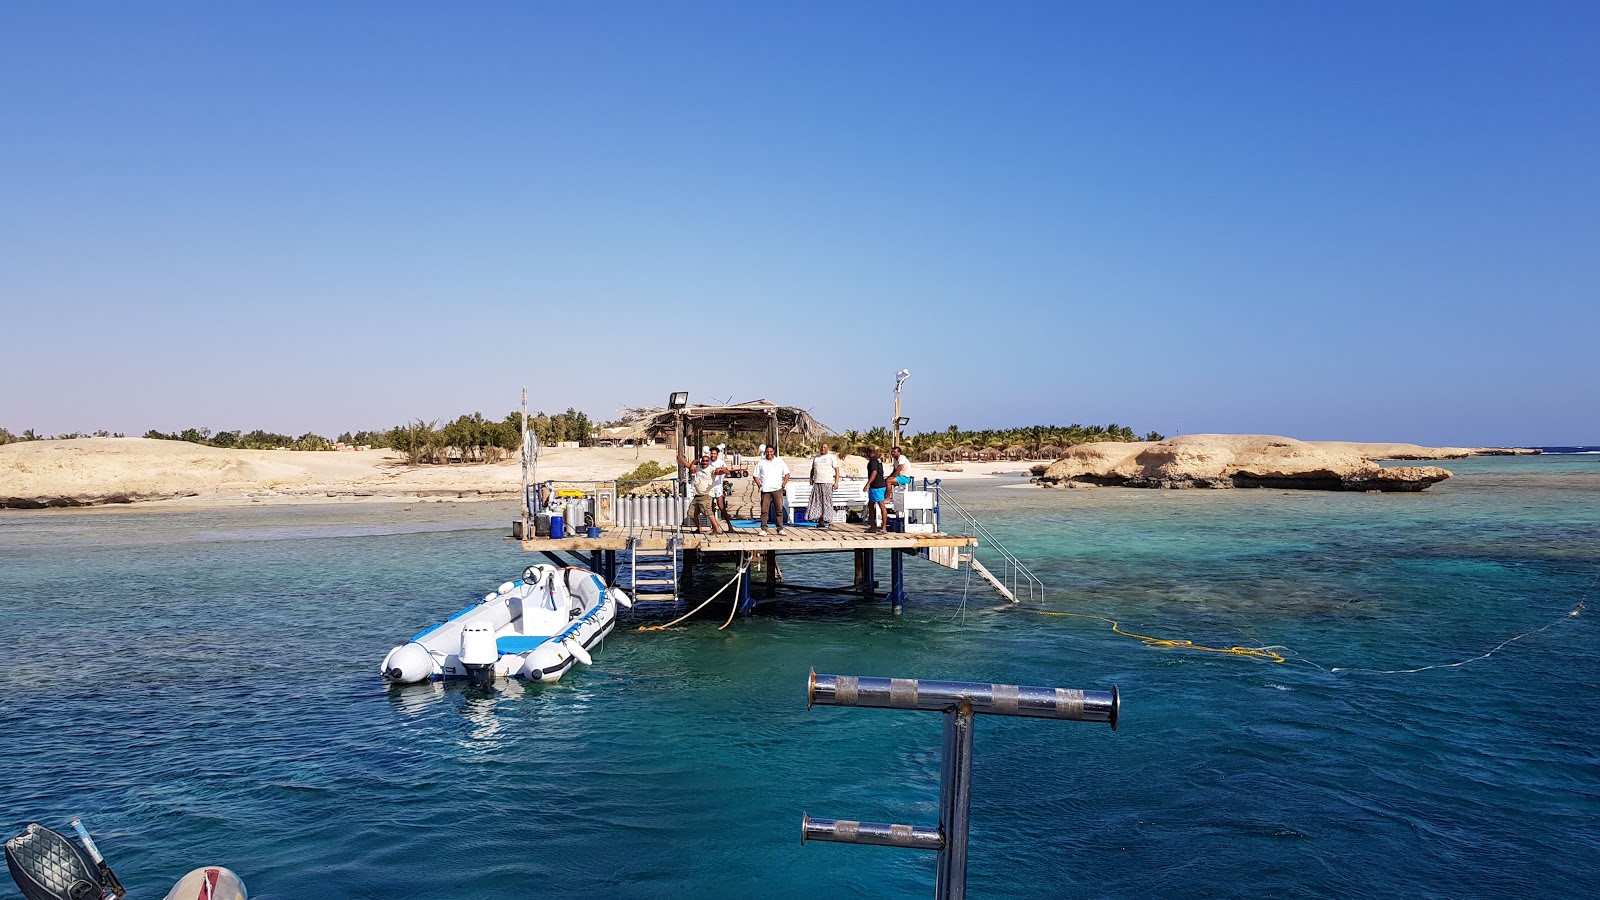 Foto de Mangrove Bay Resort - lugar popular entre los conocedores del relax